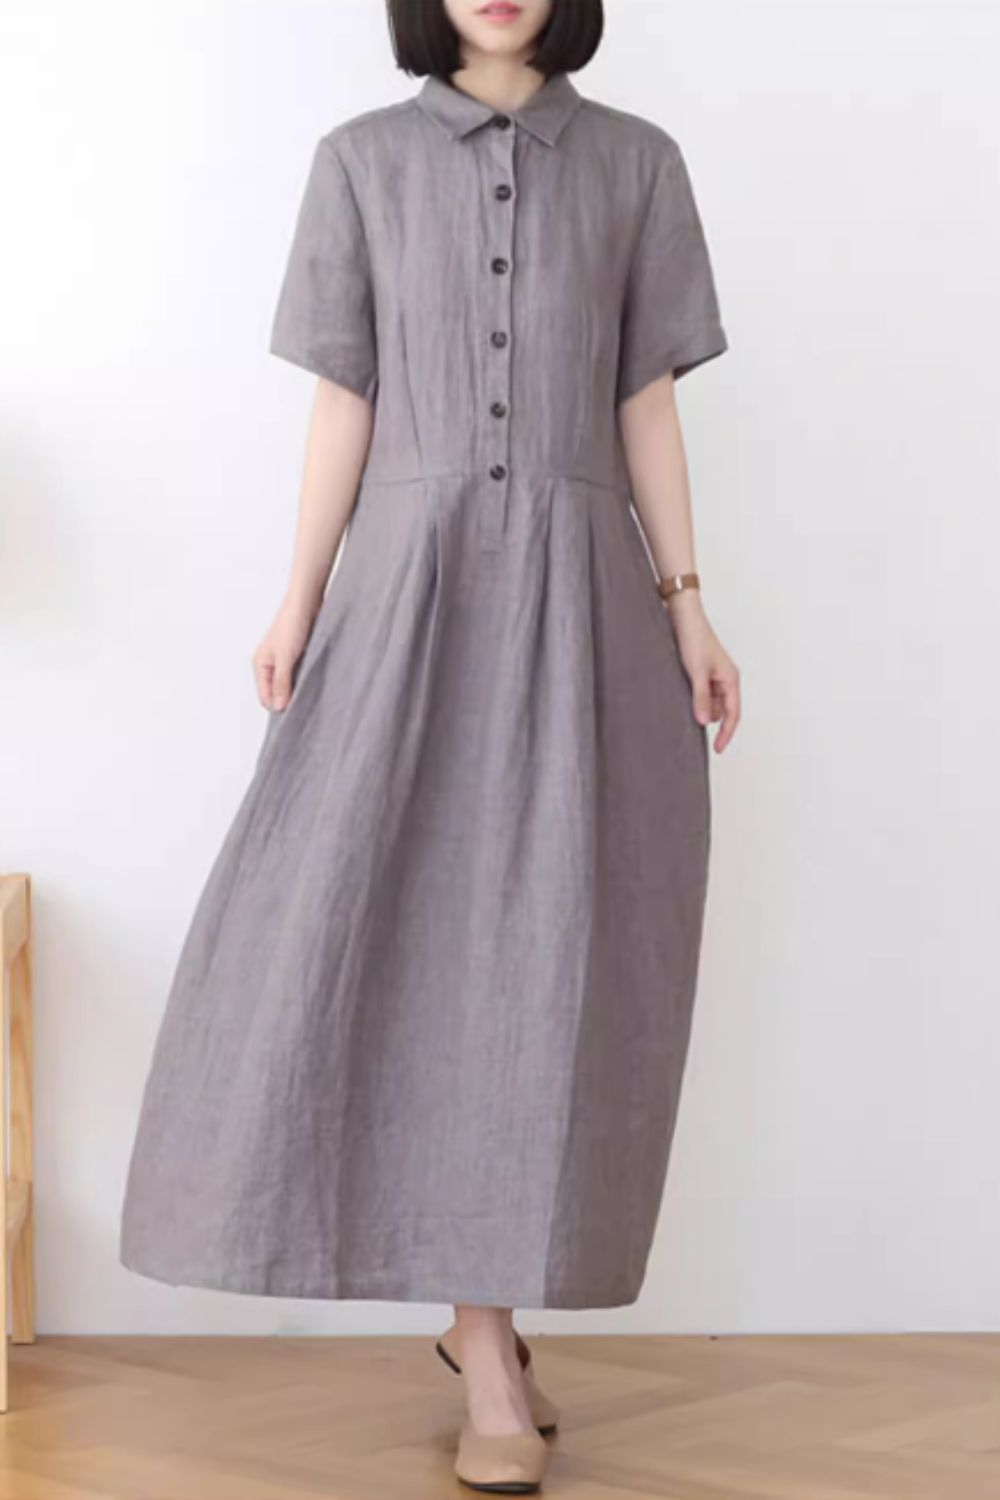 Gray summer linen shirt dress with pockets 4835